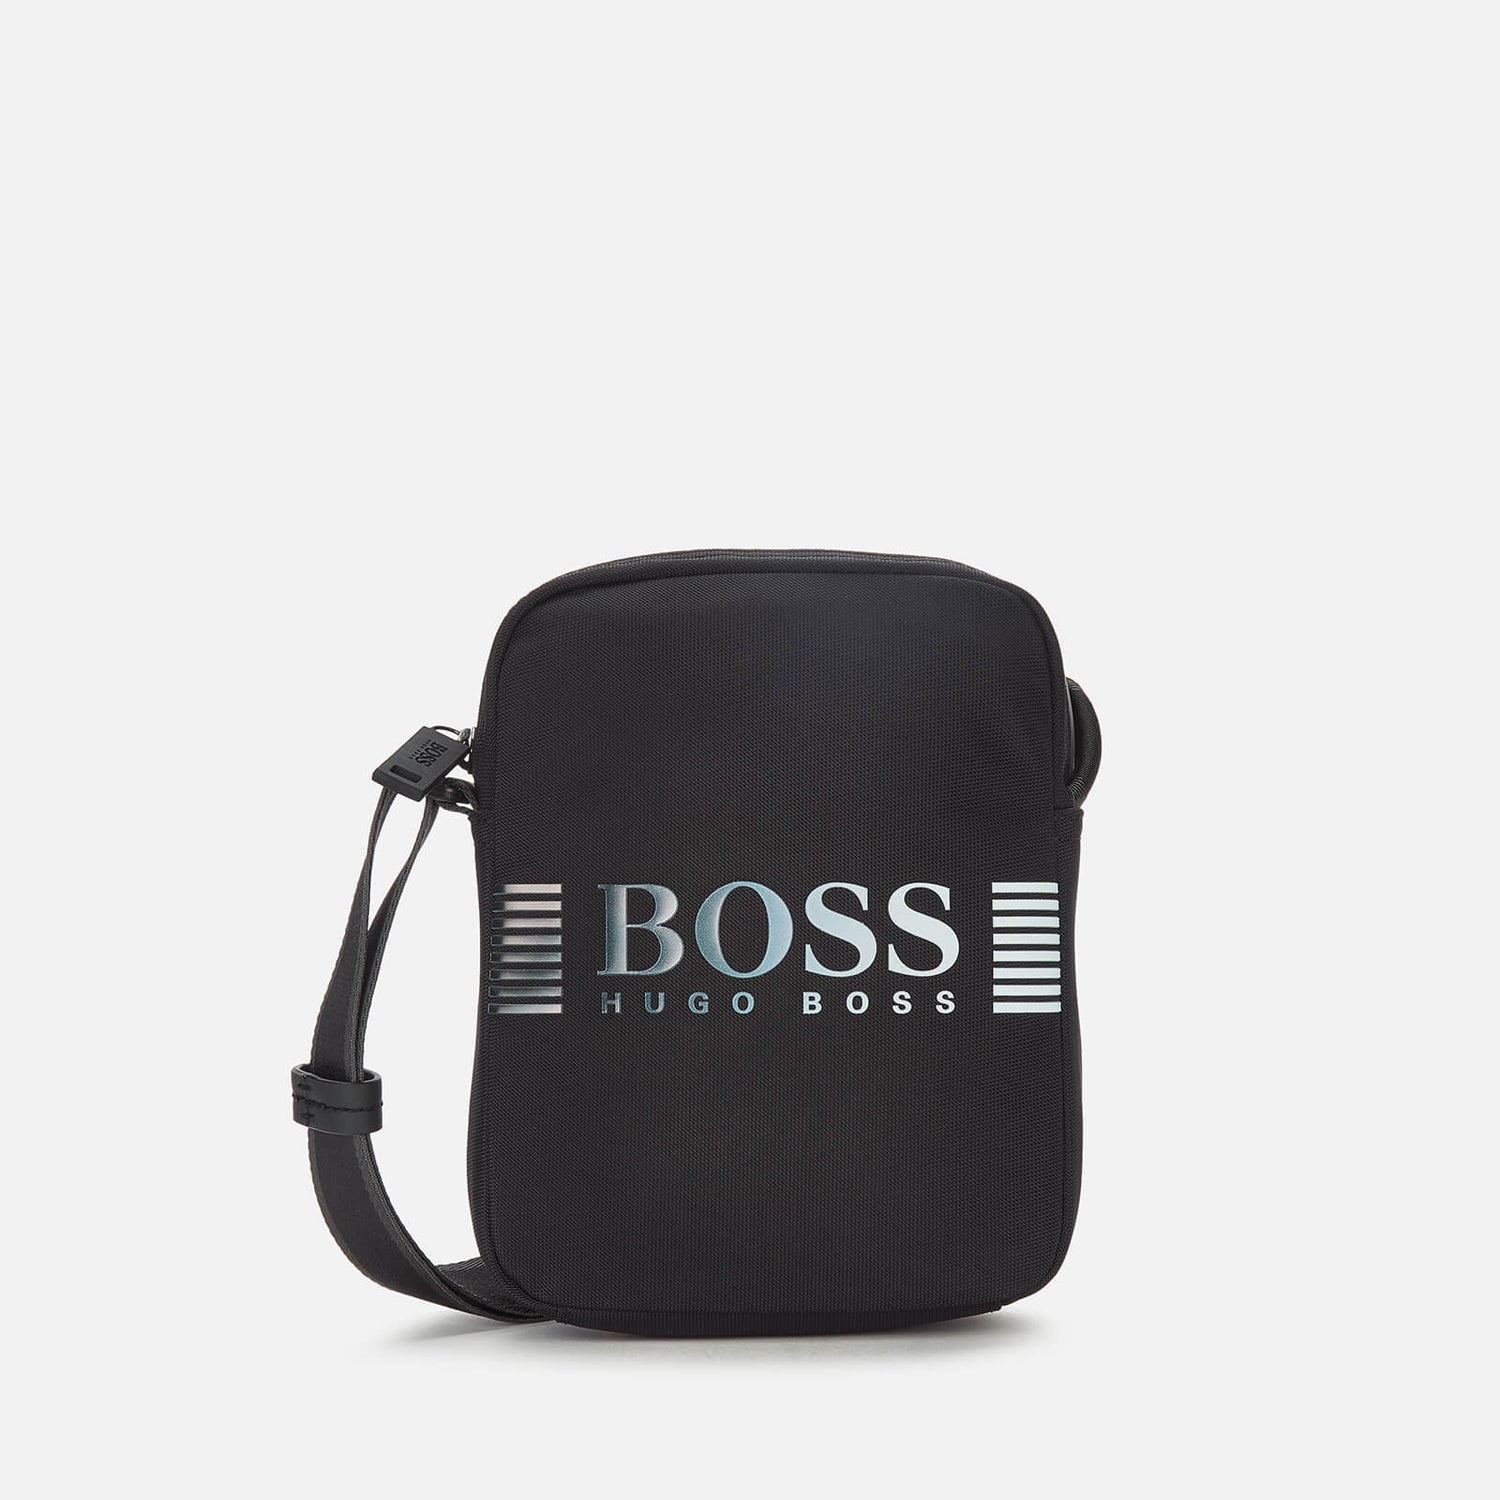 BOSS Business Men's Recycled Nylon Messenger Bag - Black